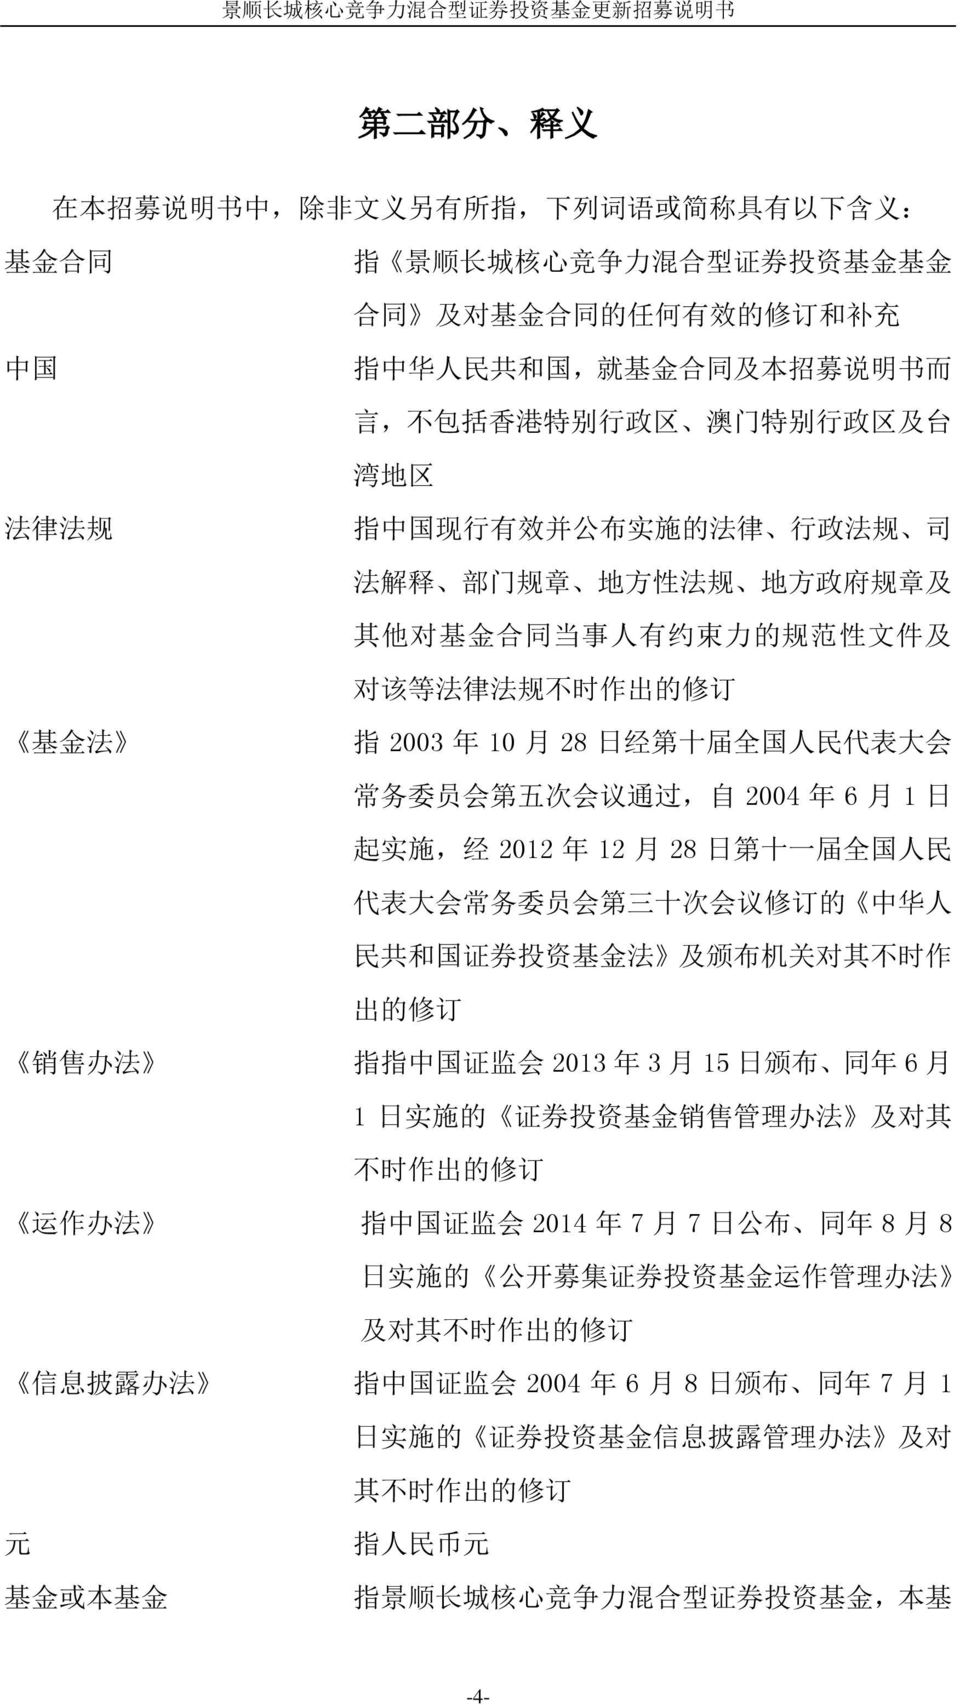 不 时 作 出 的 修 订 基 金 法 指 2003 年 10 月 28 日 经 第 十 届 全 国 人 民 代 表 大 会 常 务 委 员 会 第 五 次 会 议 通 过, 自 2004 年 6 月 1 日 起 实 施, 经 2012 年 12 月 28 日 第 十 一 届 全 国 人 民 代 表 大 会 常 务 委 员 会 第 三 十 次 会 议 修 订 的 中 华 人 民 共 和 国 证